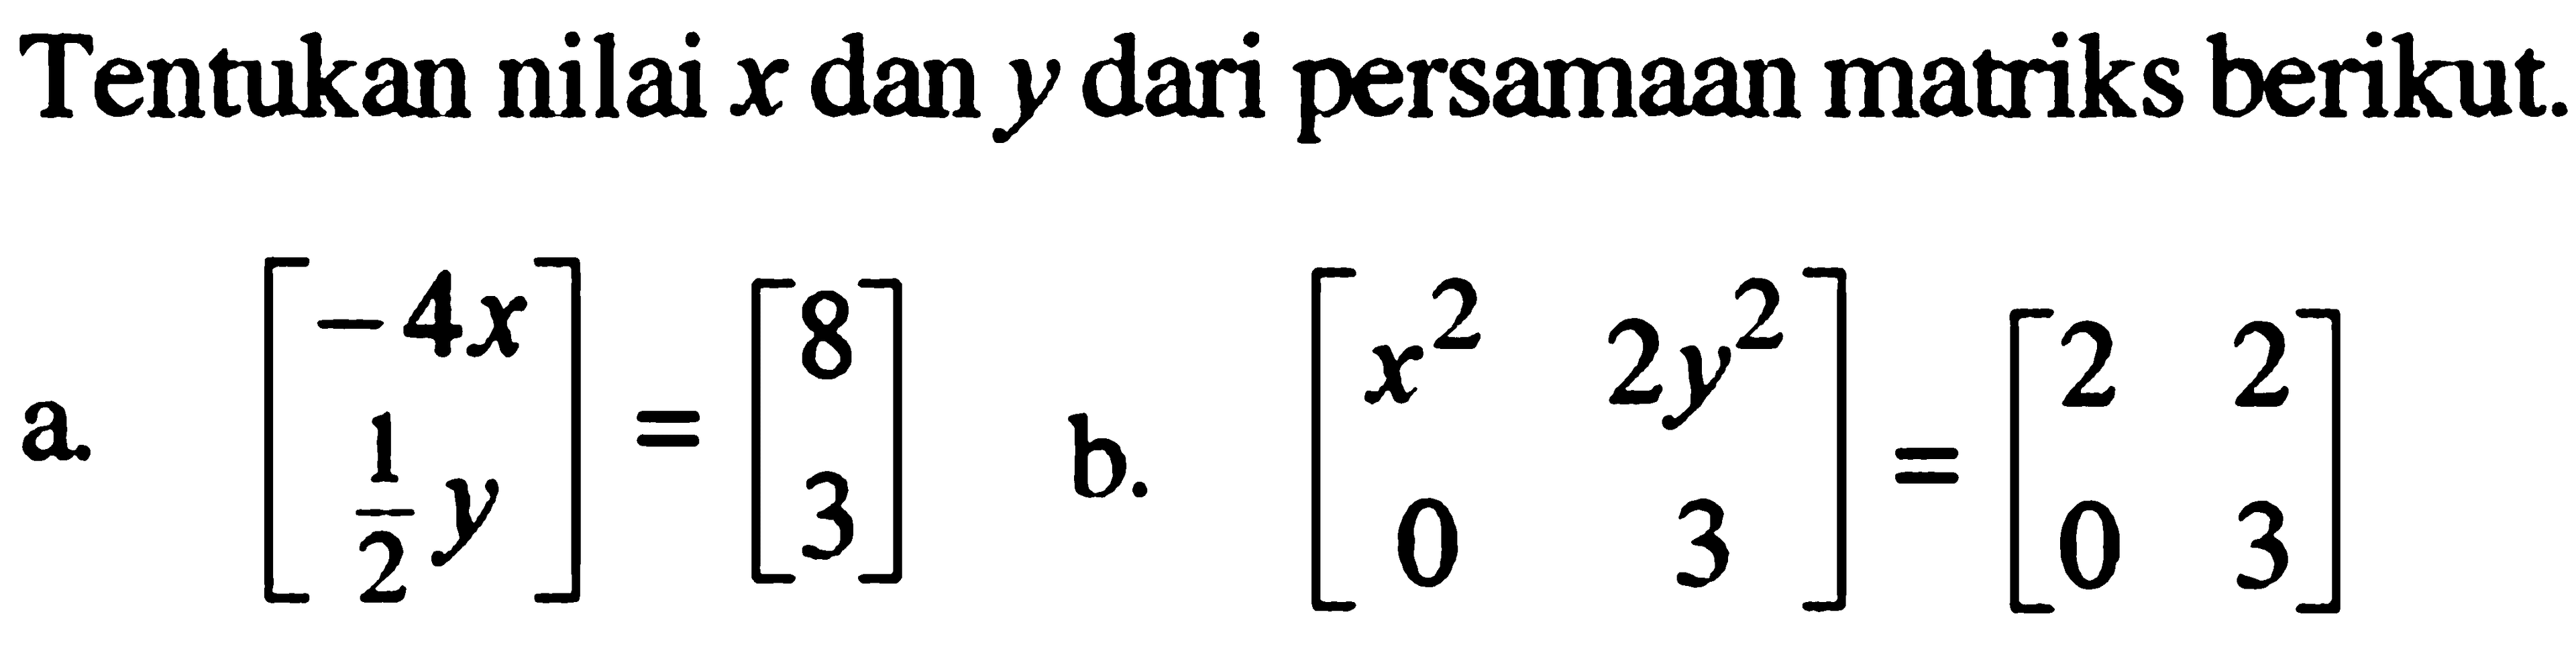 Tentukan nilai x dan y dari persamaan matriks berikut. a. [-4 1/2y]=[8 3] b. [x^2 2y^2 0 3]=[2 2 0 3]